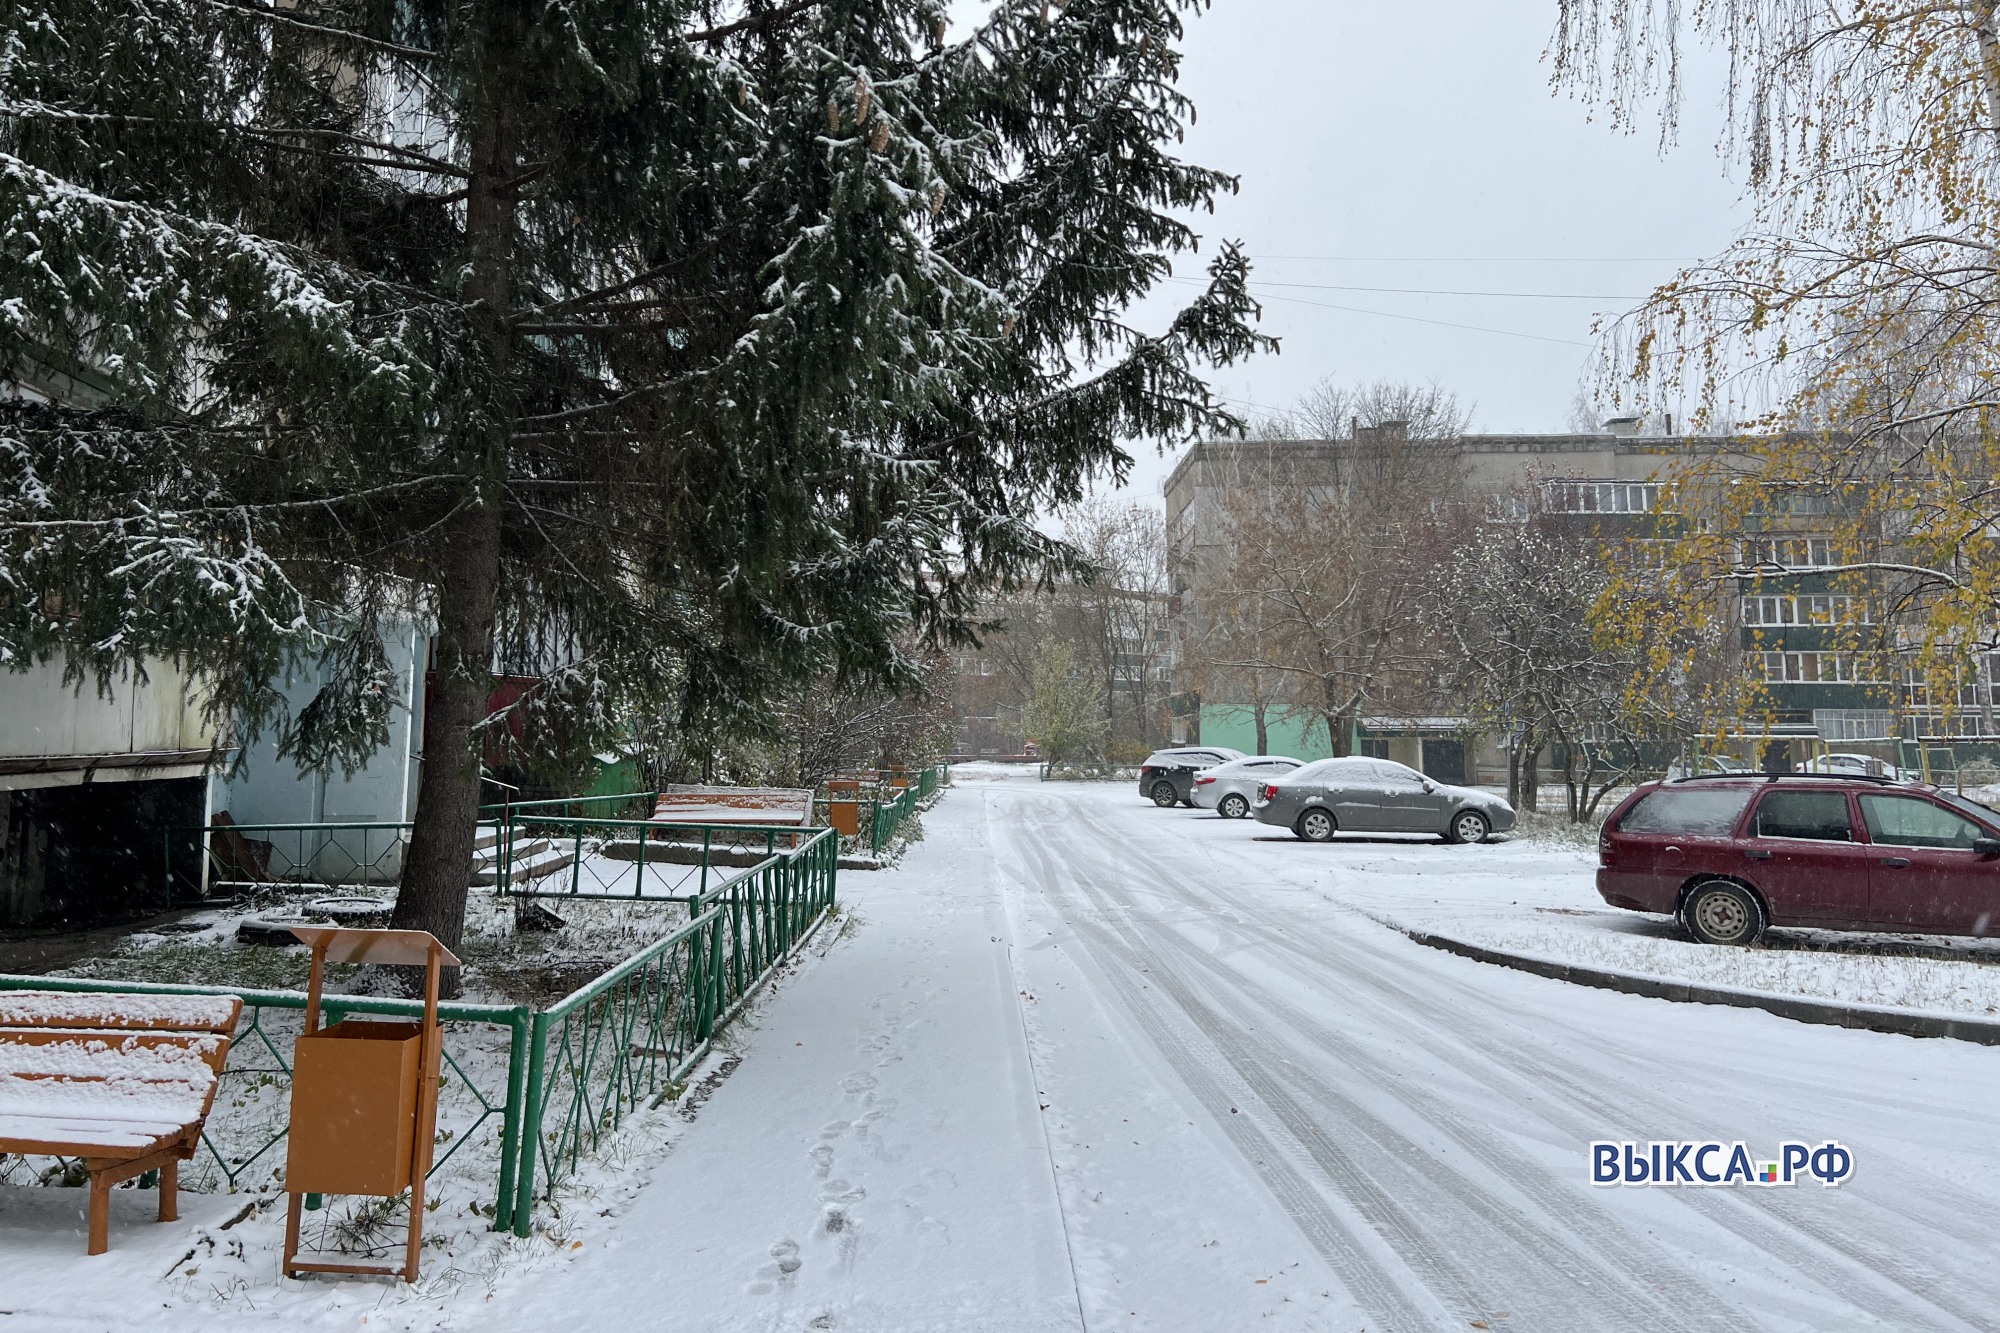 Названы ответственные за уборку снега на улицах Выксы